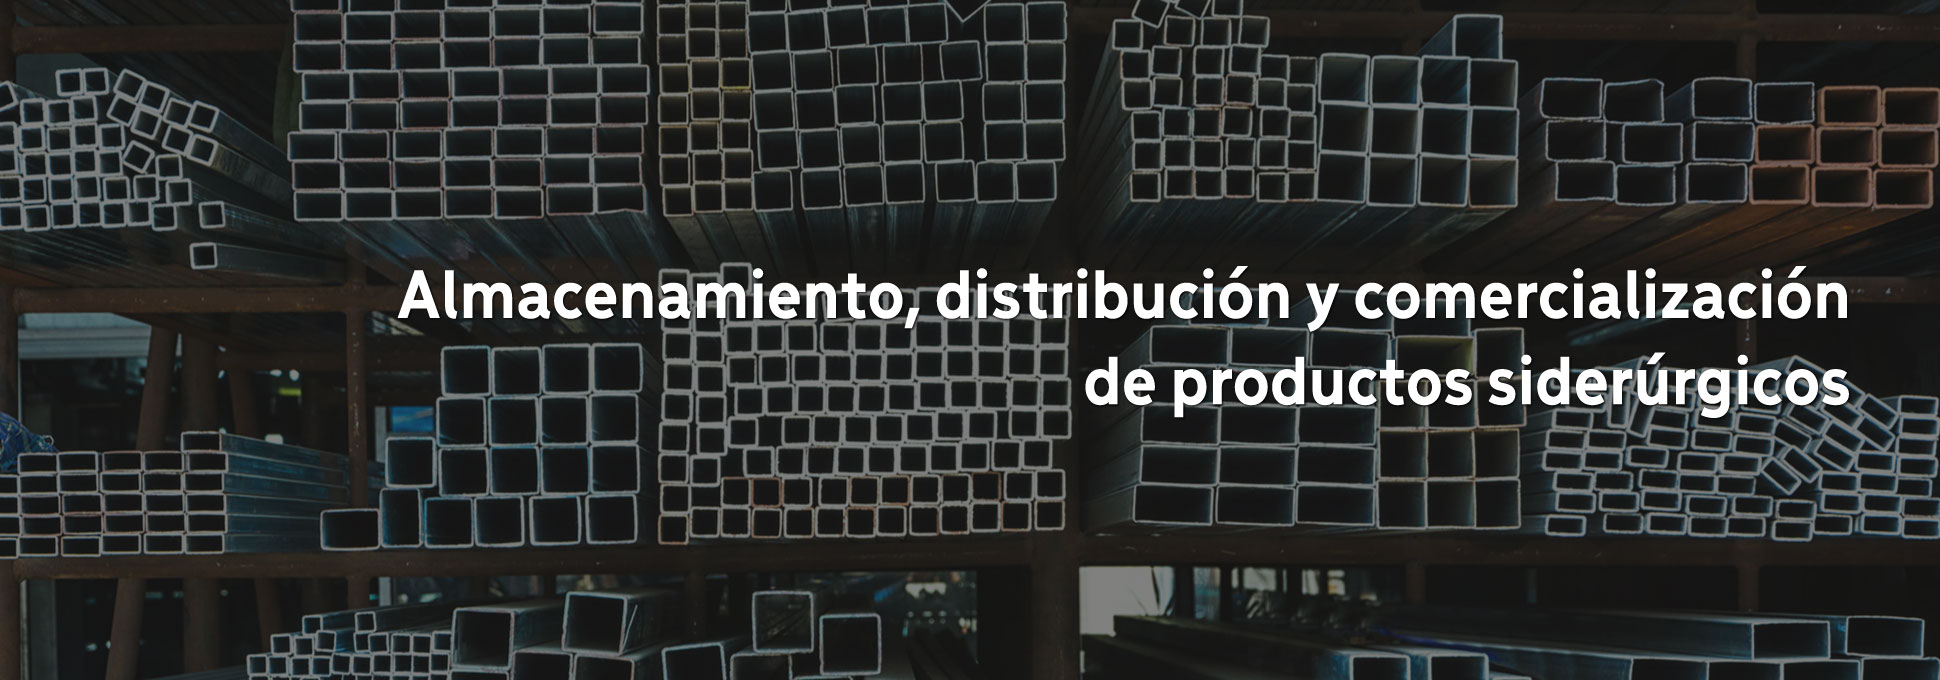 Hierros Langreo, almacenamiento, distribución y comercialización de productos siderúrgicos